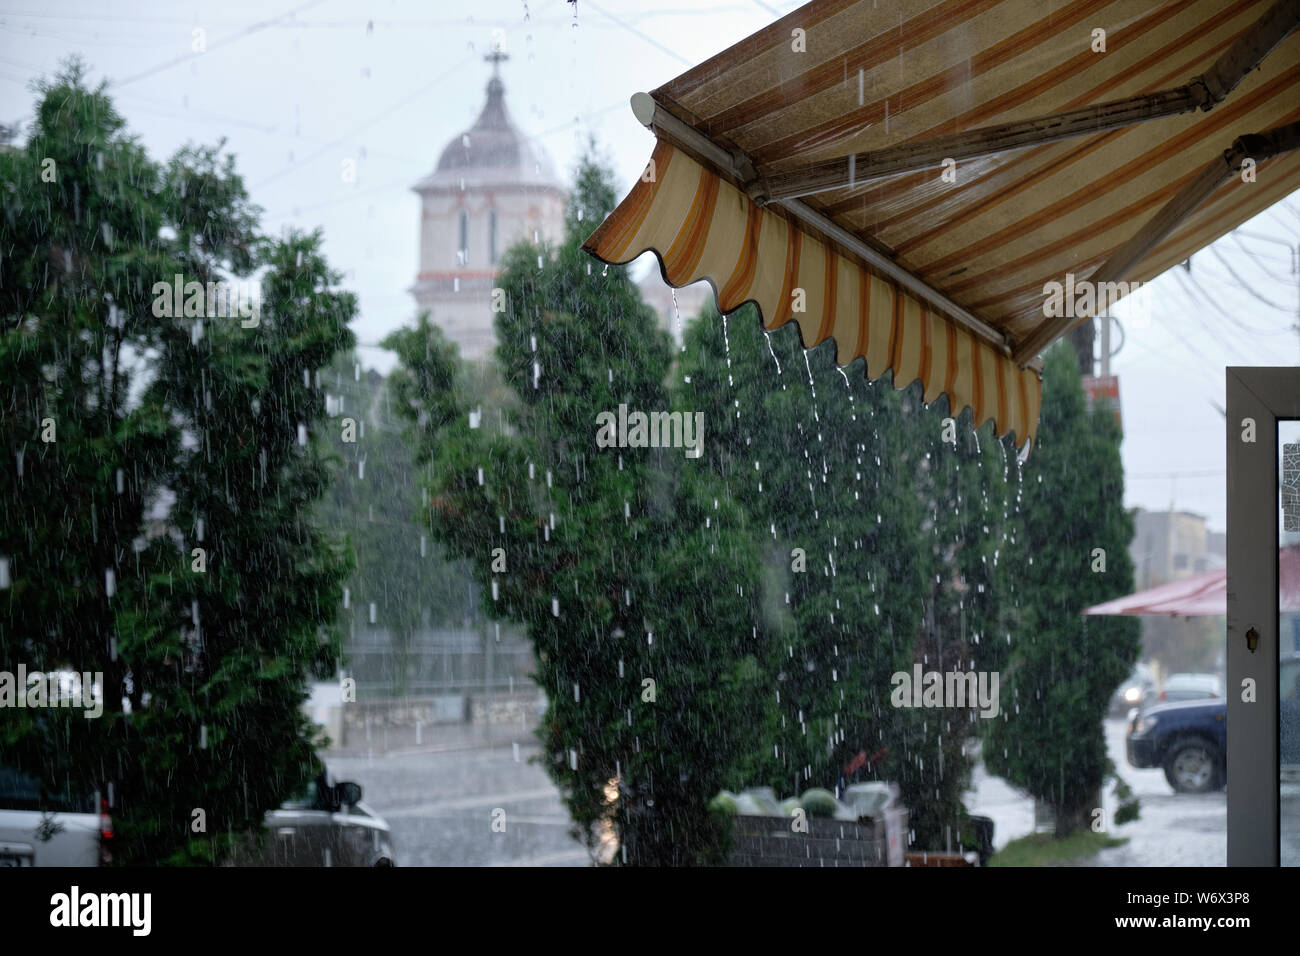 Negozio di fronte tenda gocciolamento durante una forte tempesta di pioggia. Street view con chiesa in background Foto Stock